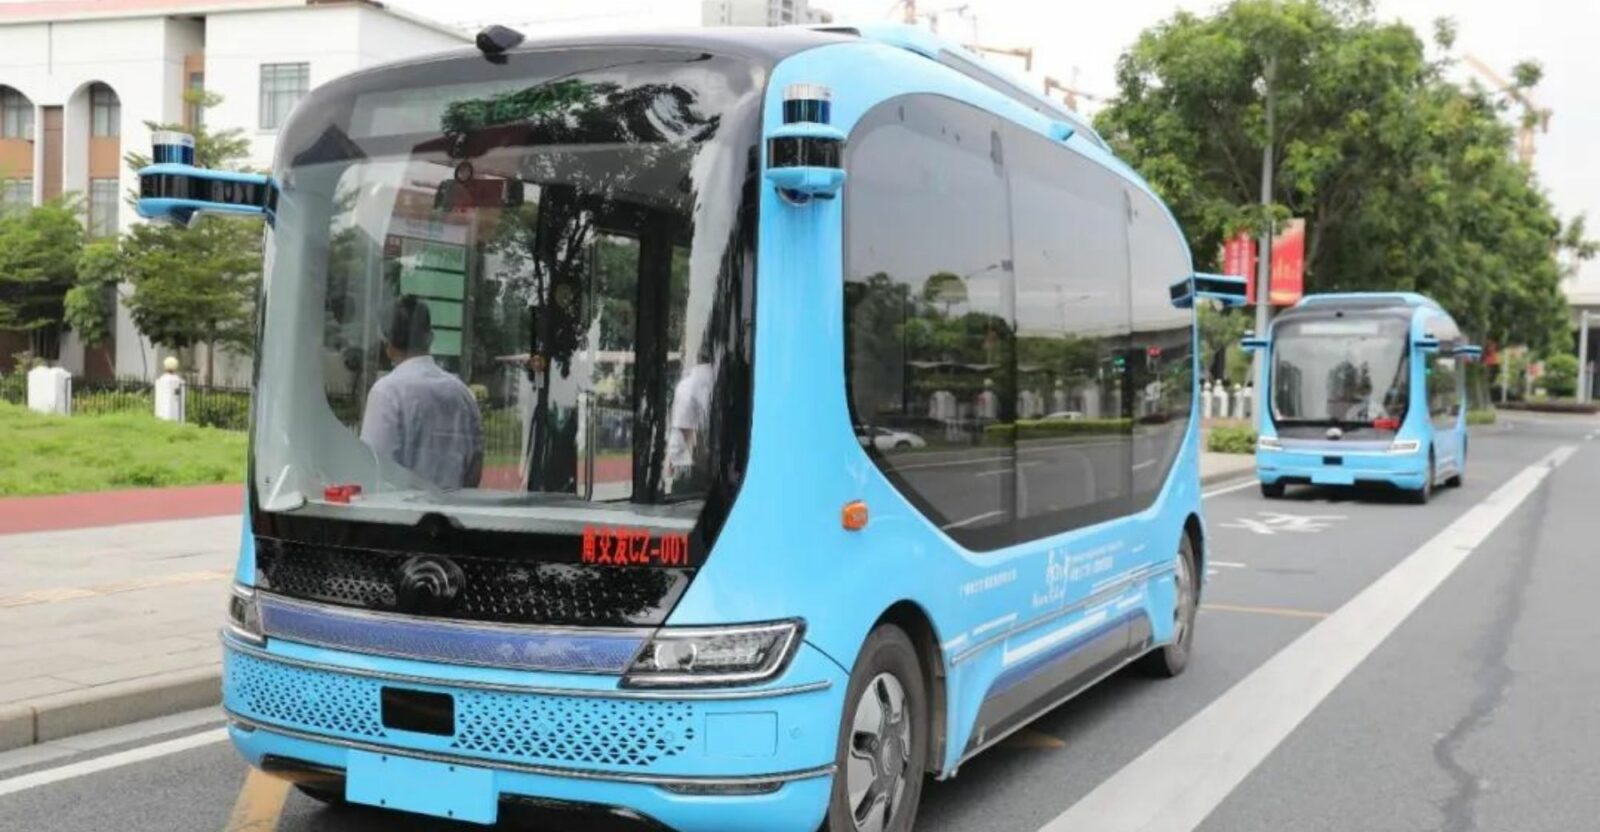 driverless-bus-china